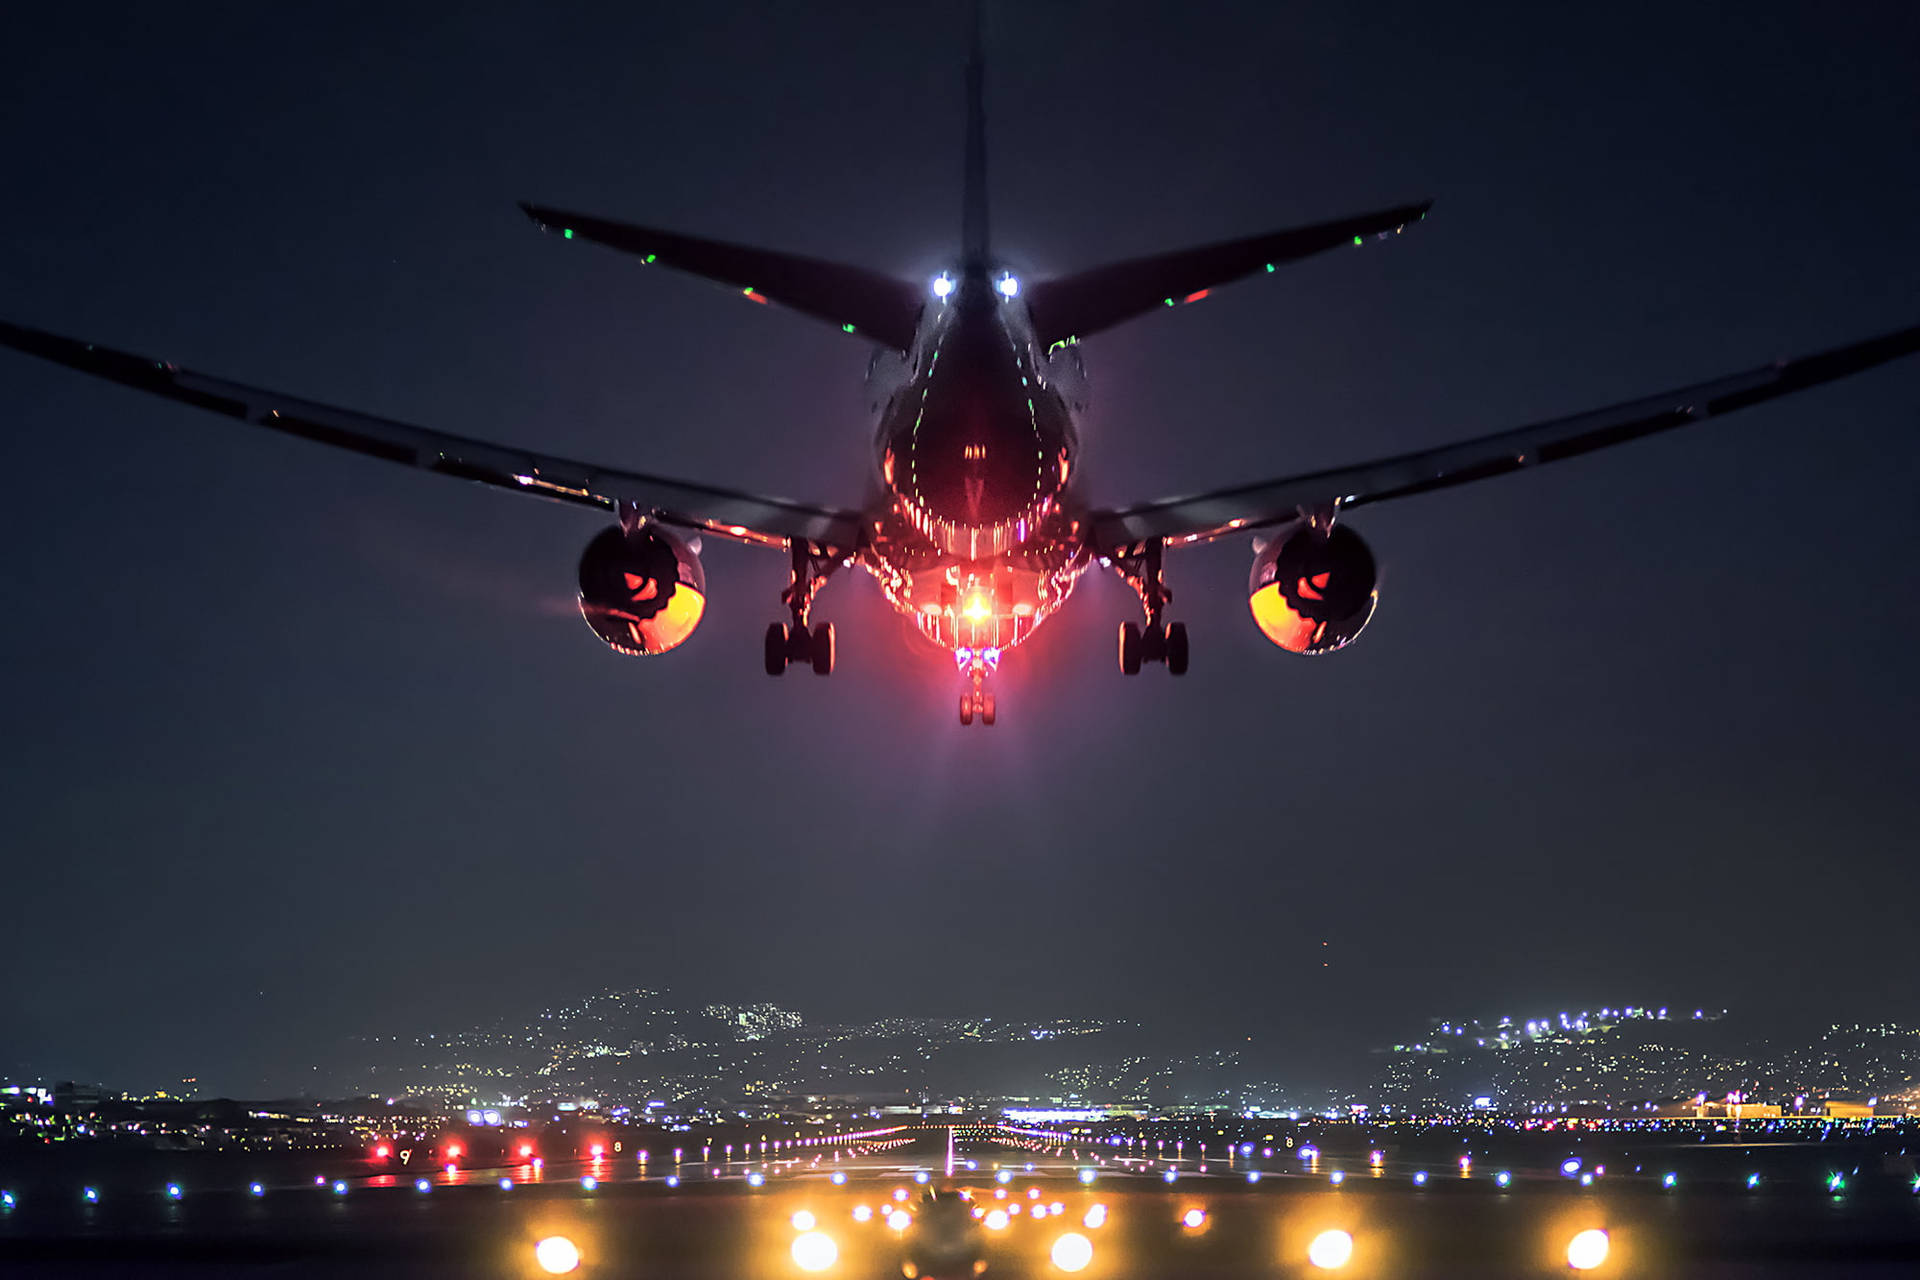 Hd Plane Landing At Night Background